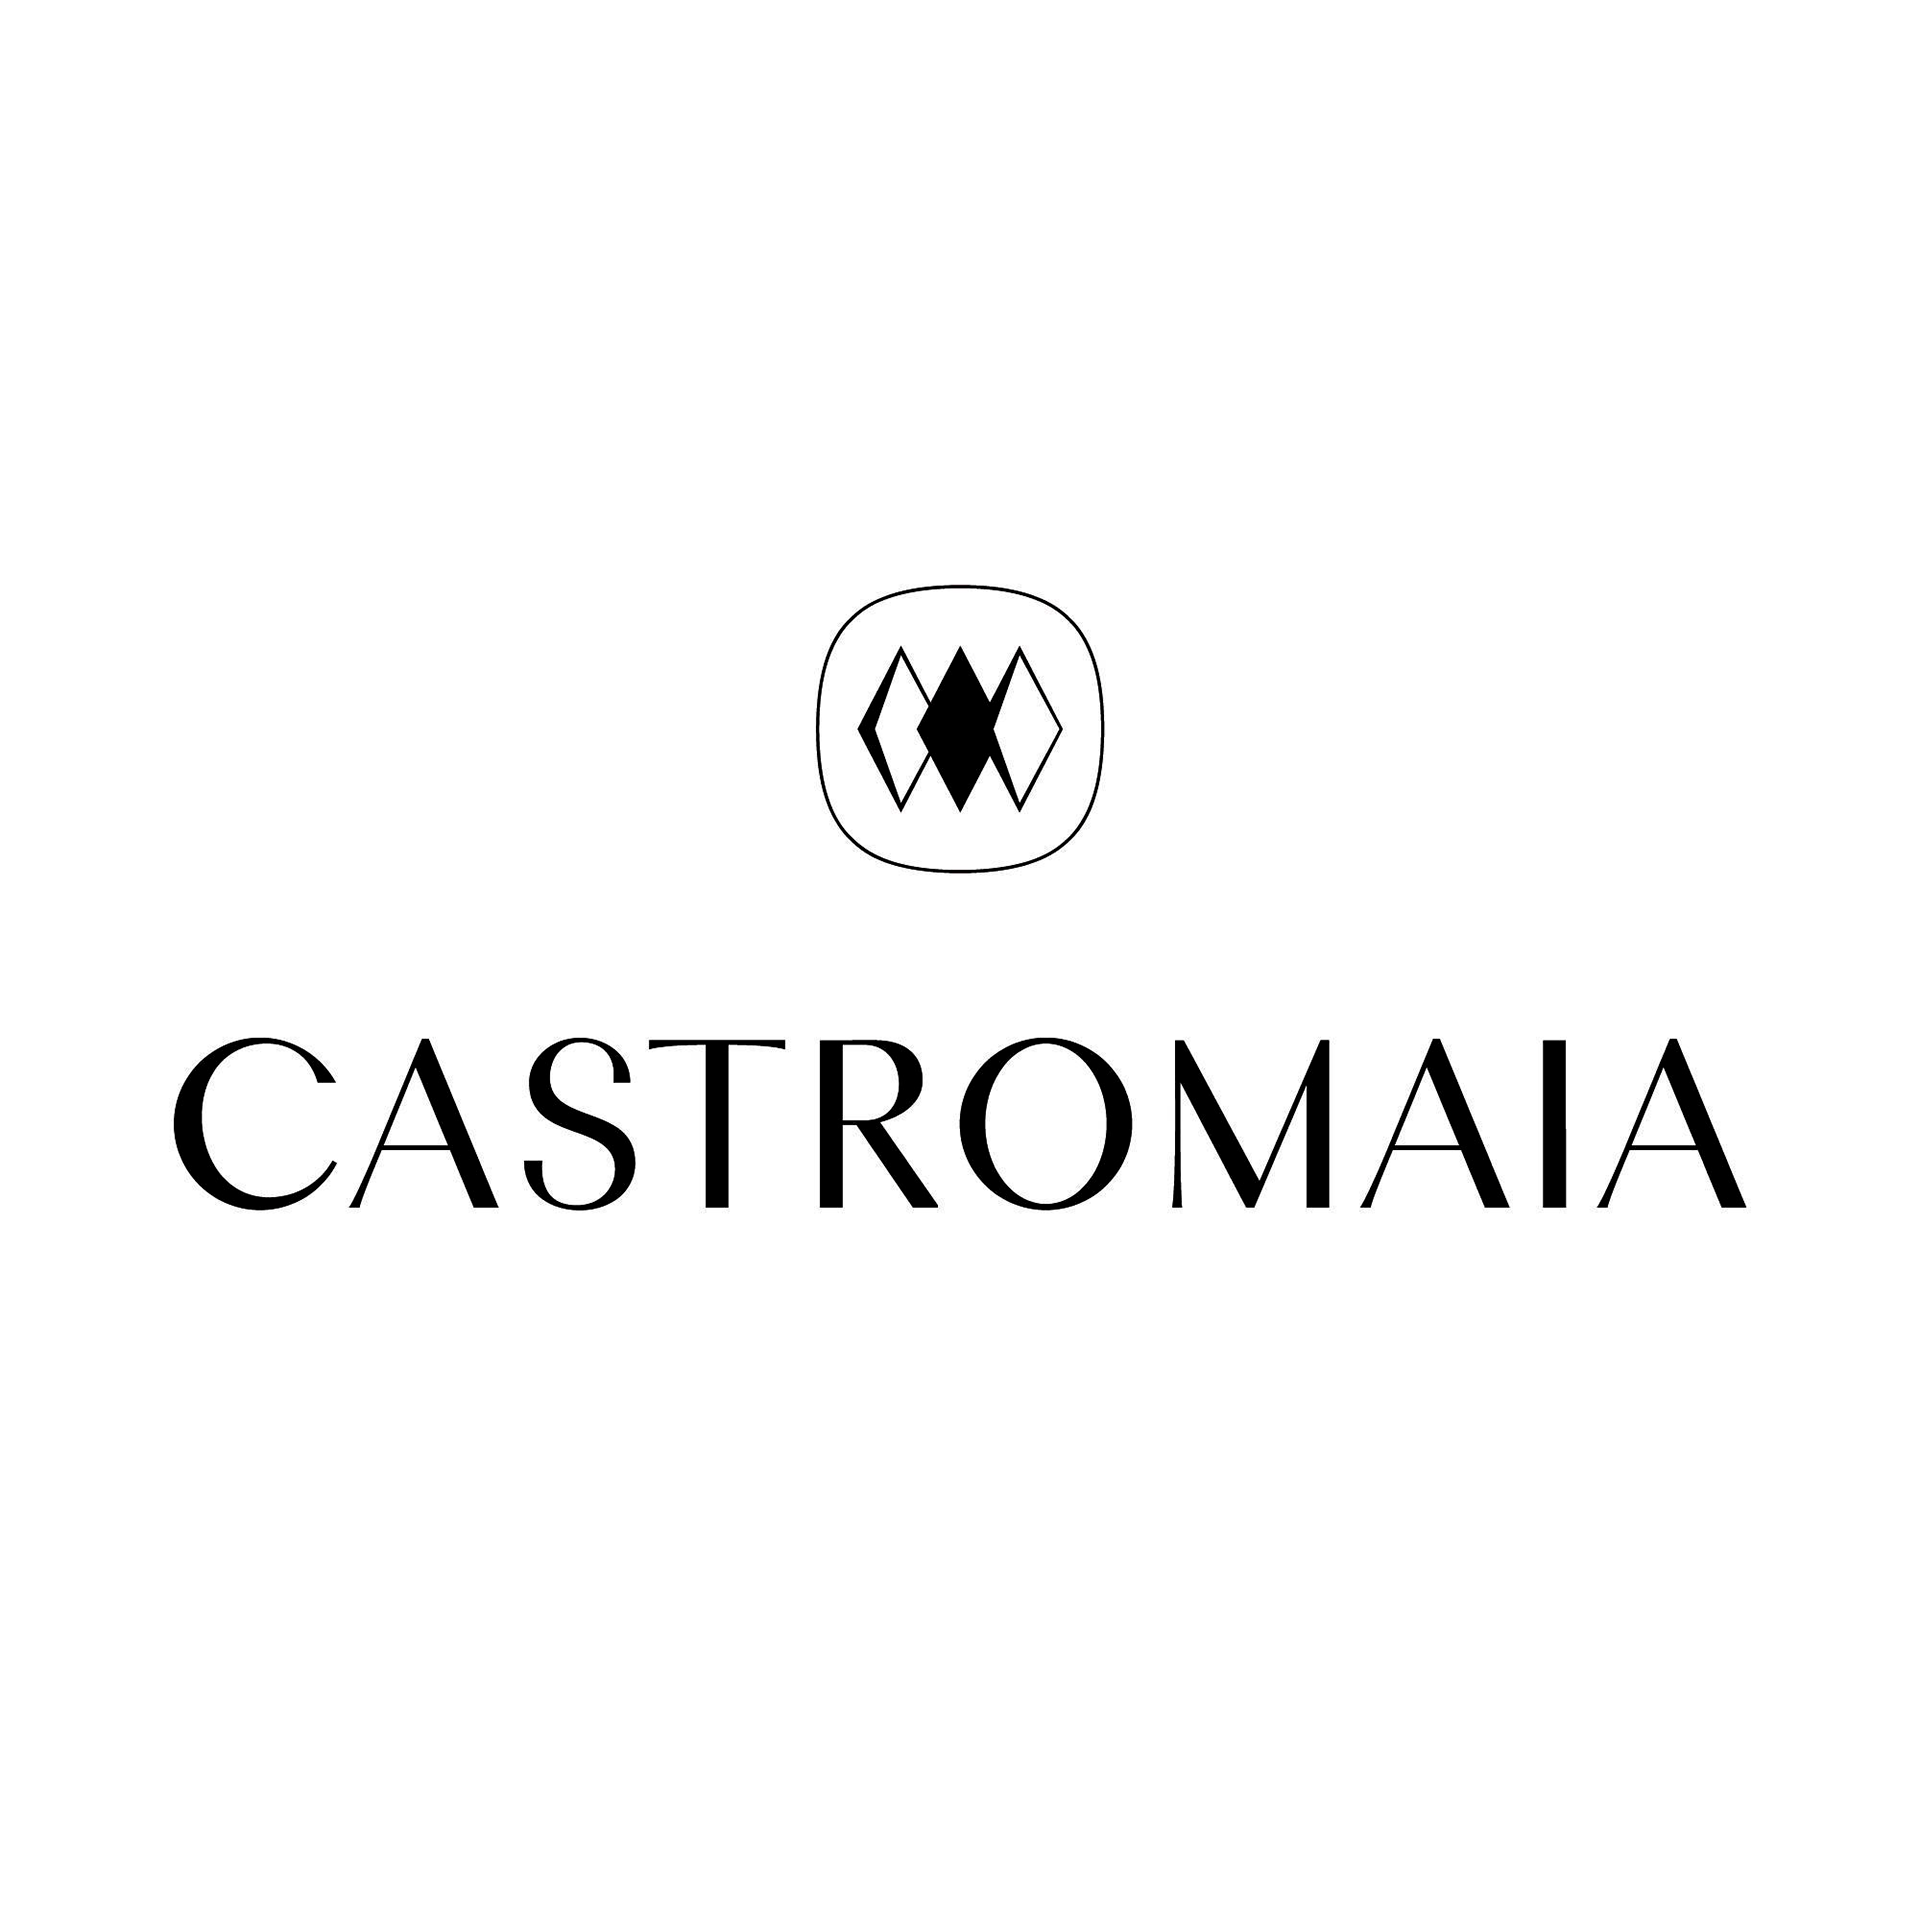 Castromaia